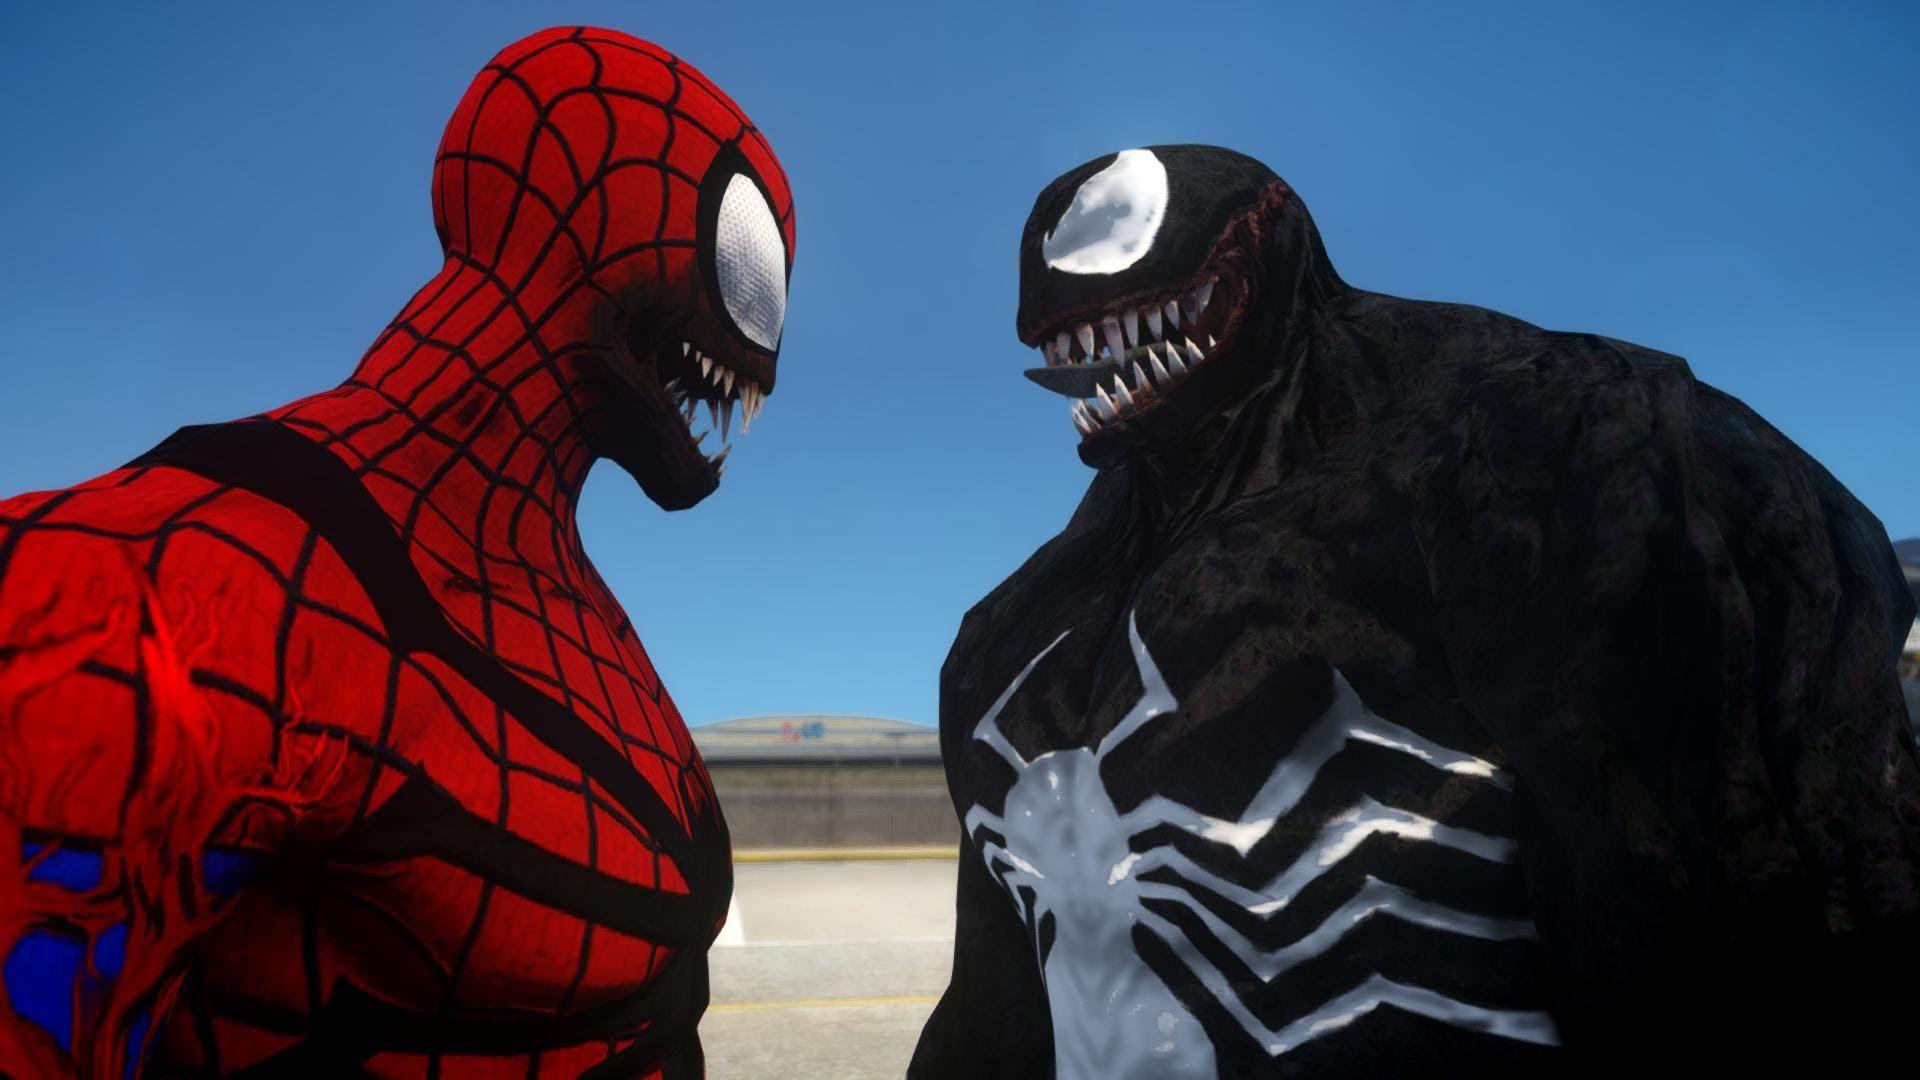 Spiderman (Carnage) vs Venom